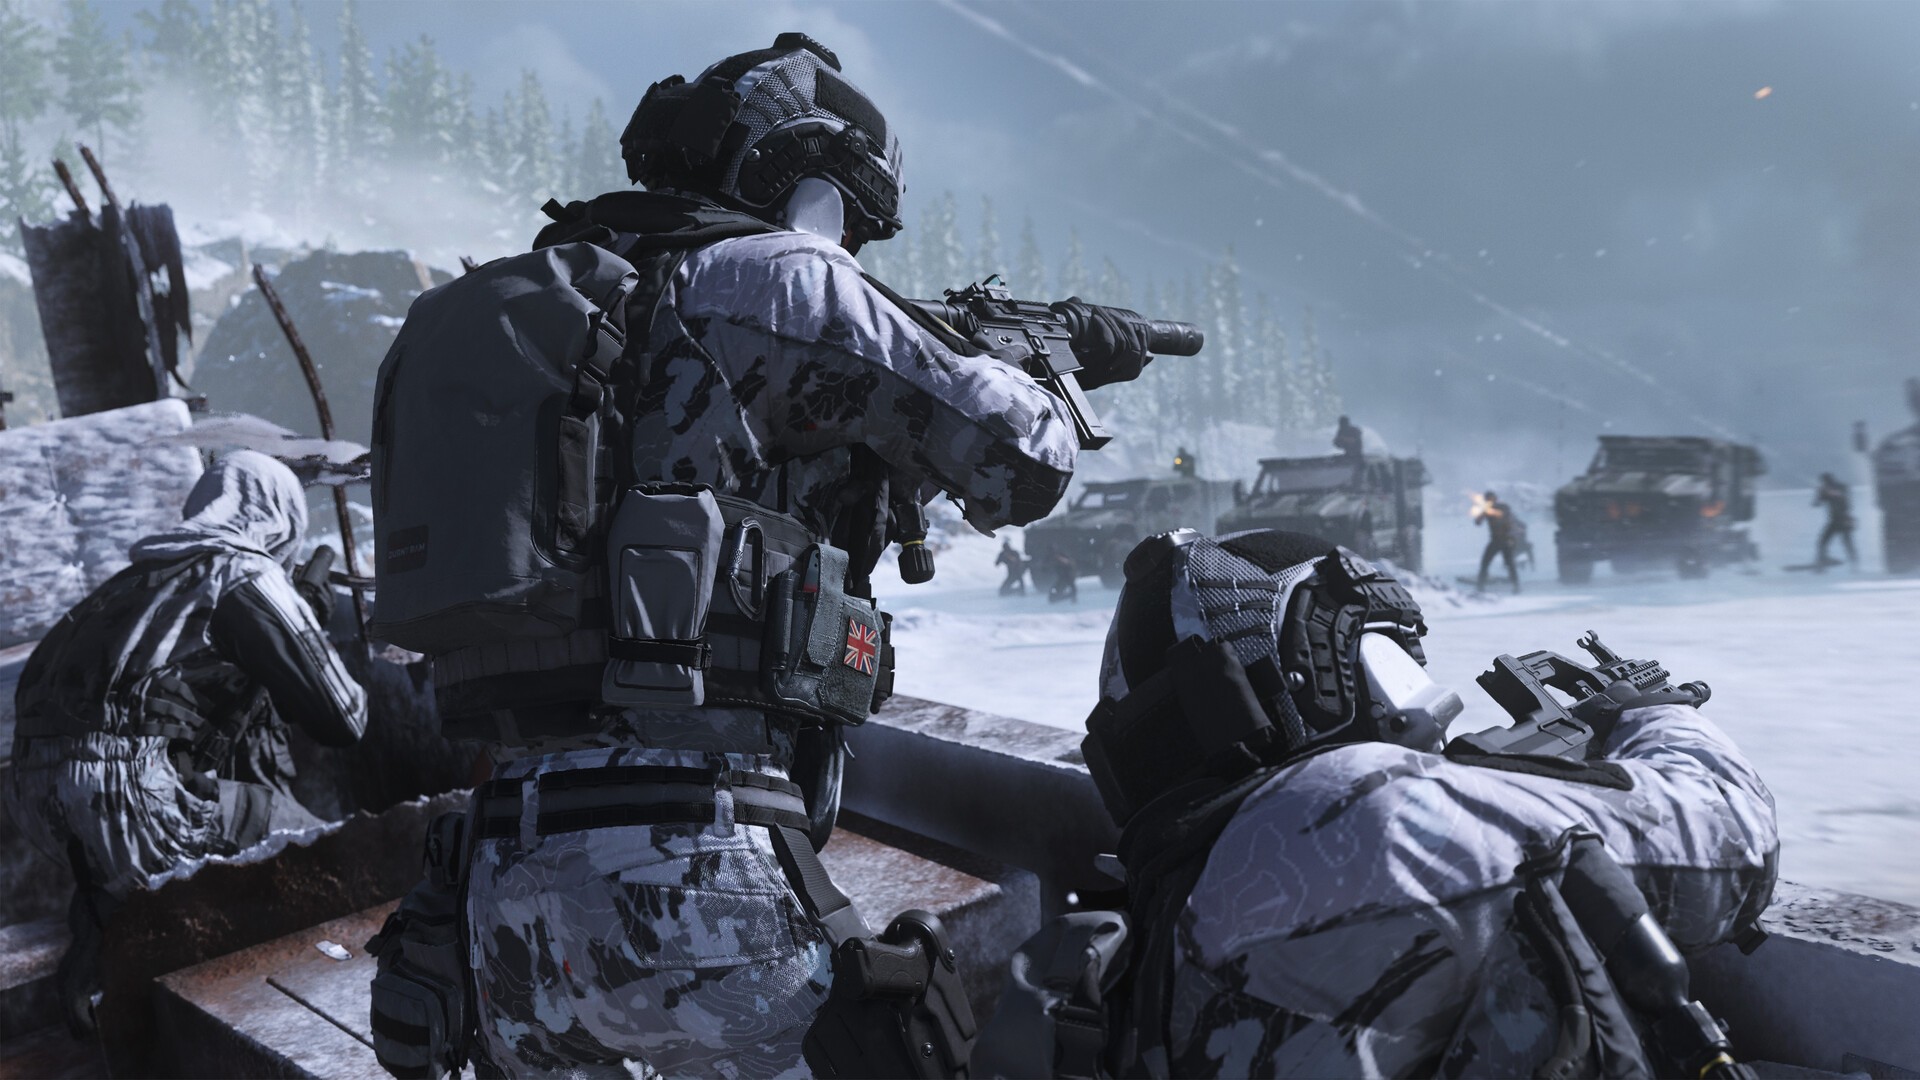 Call of Duty®: Modern Warfare® III - Cross-Gen Bundle